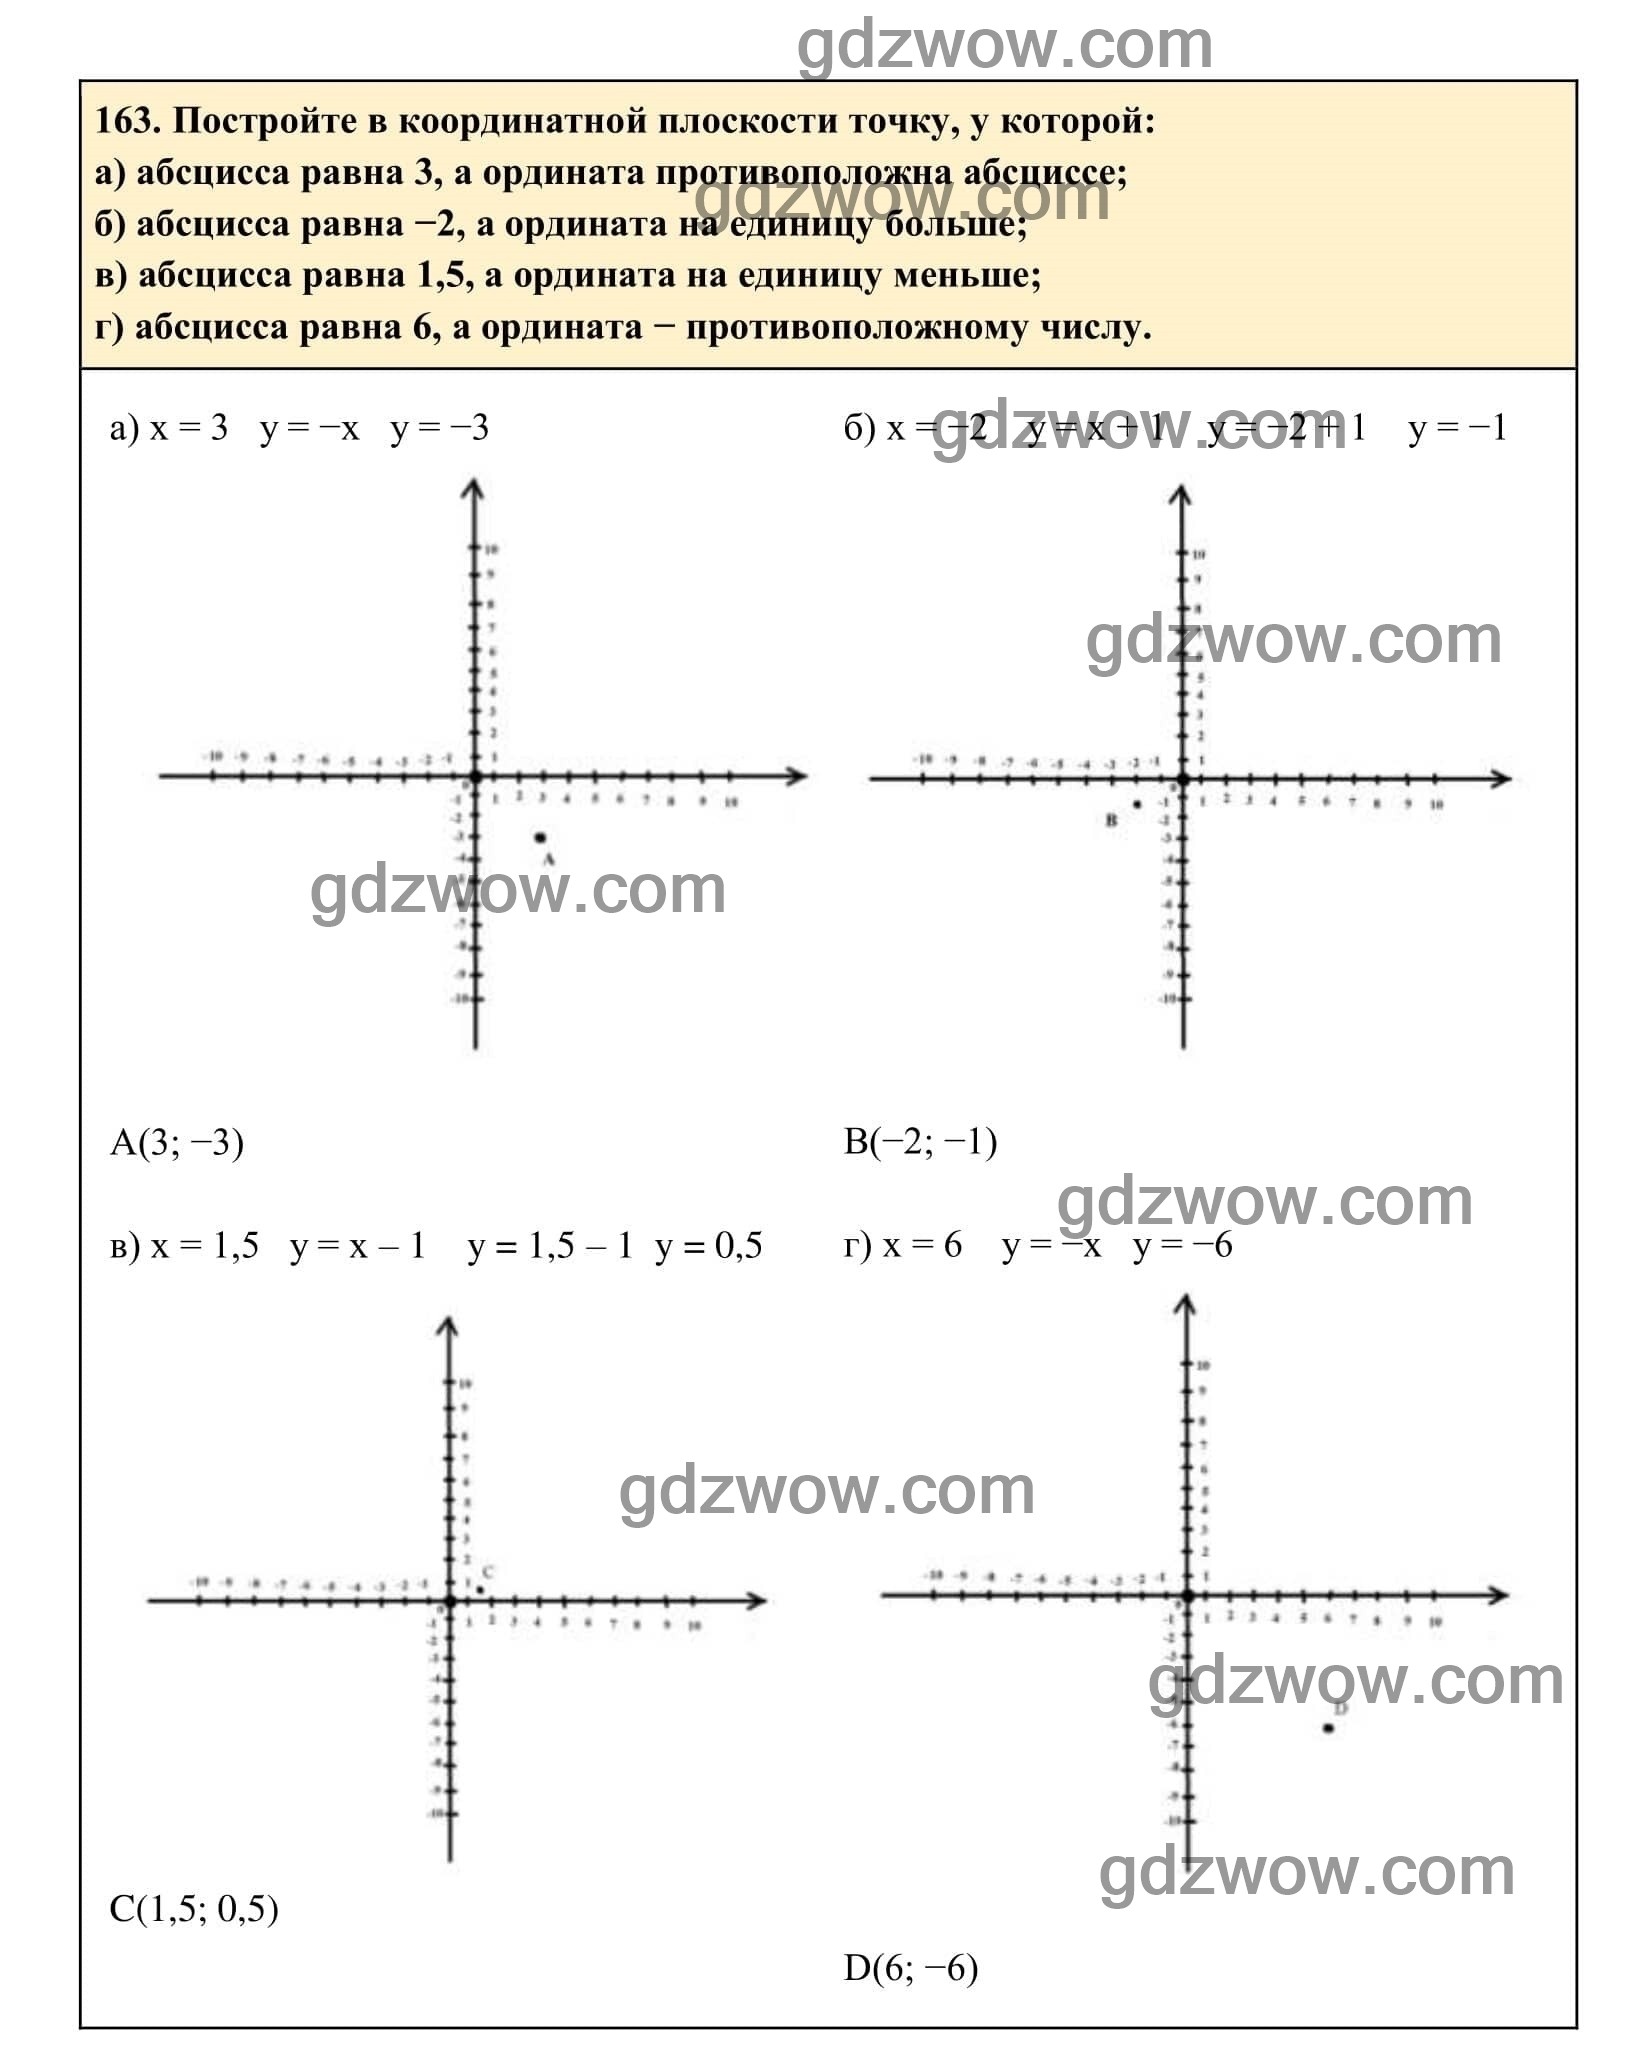 Упражнение 163 - ГДЗ по Алгебре 7 класс Учебник Макарычев (решебник) - GDZwow